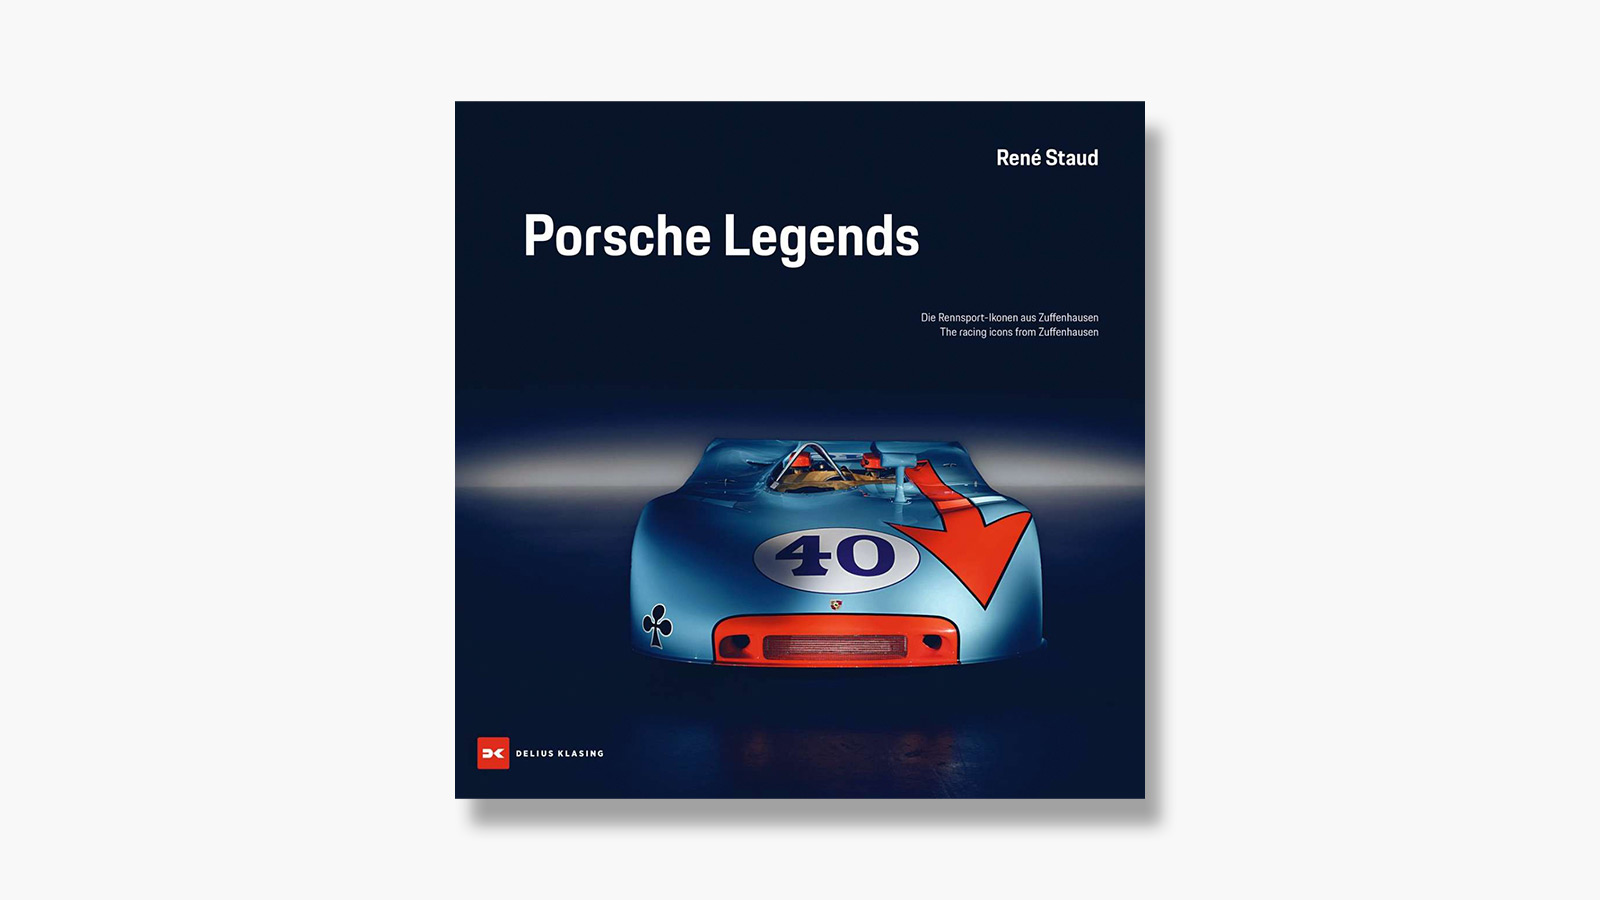 Porsche Legends: The Racing Icons from Zuffenhausen